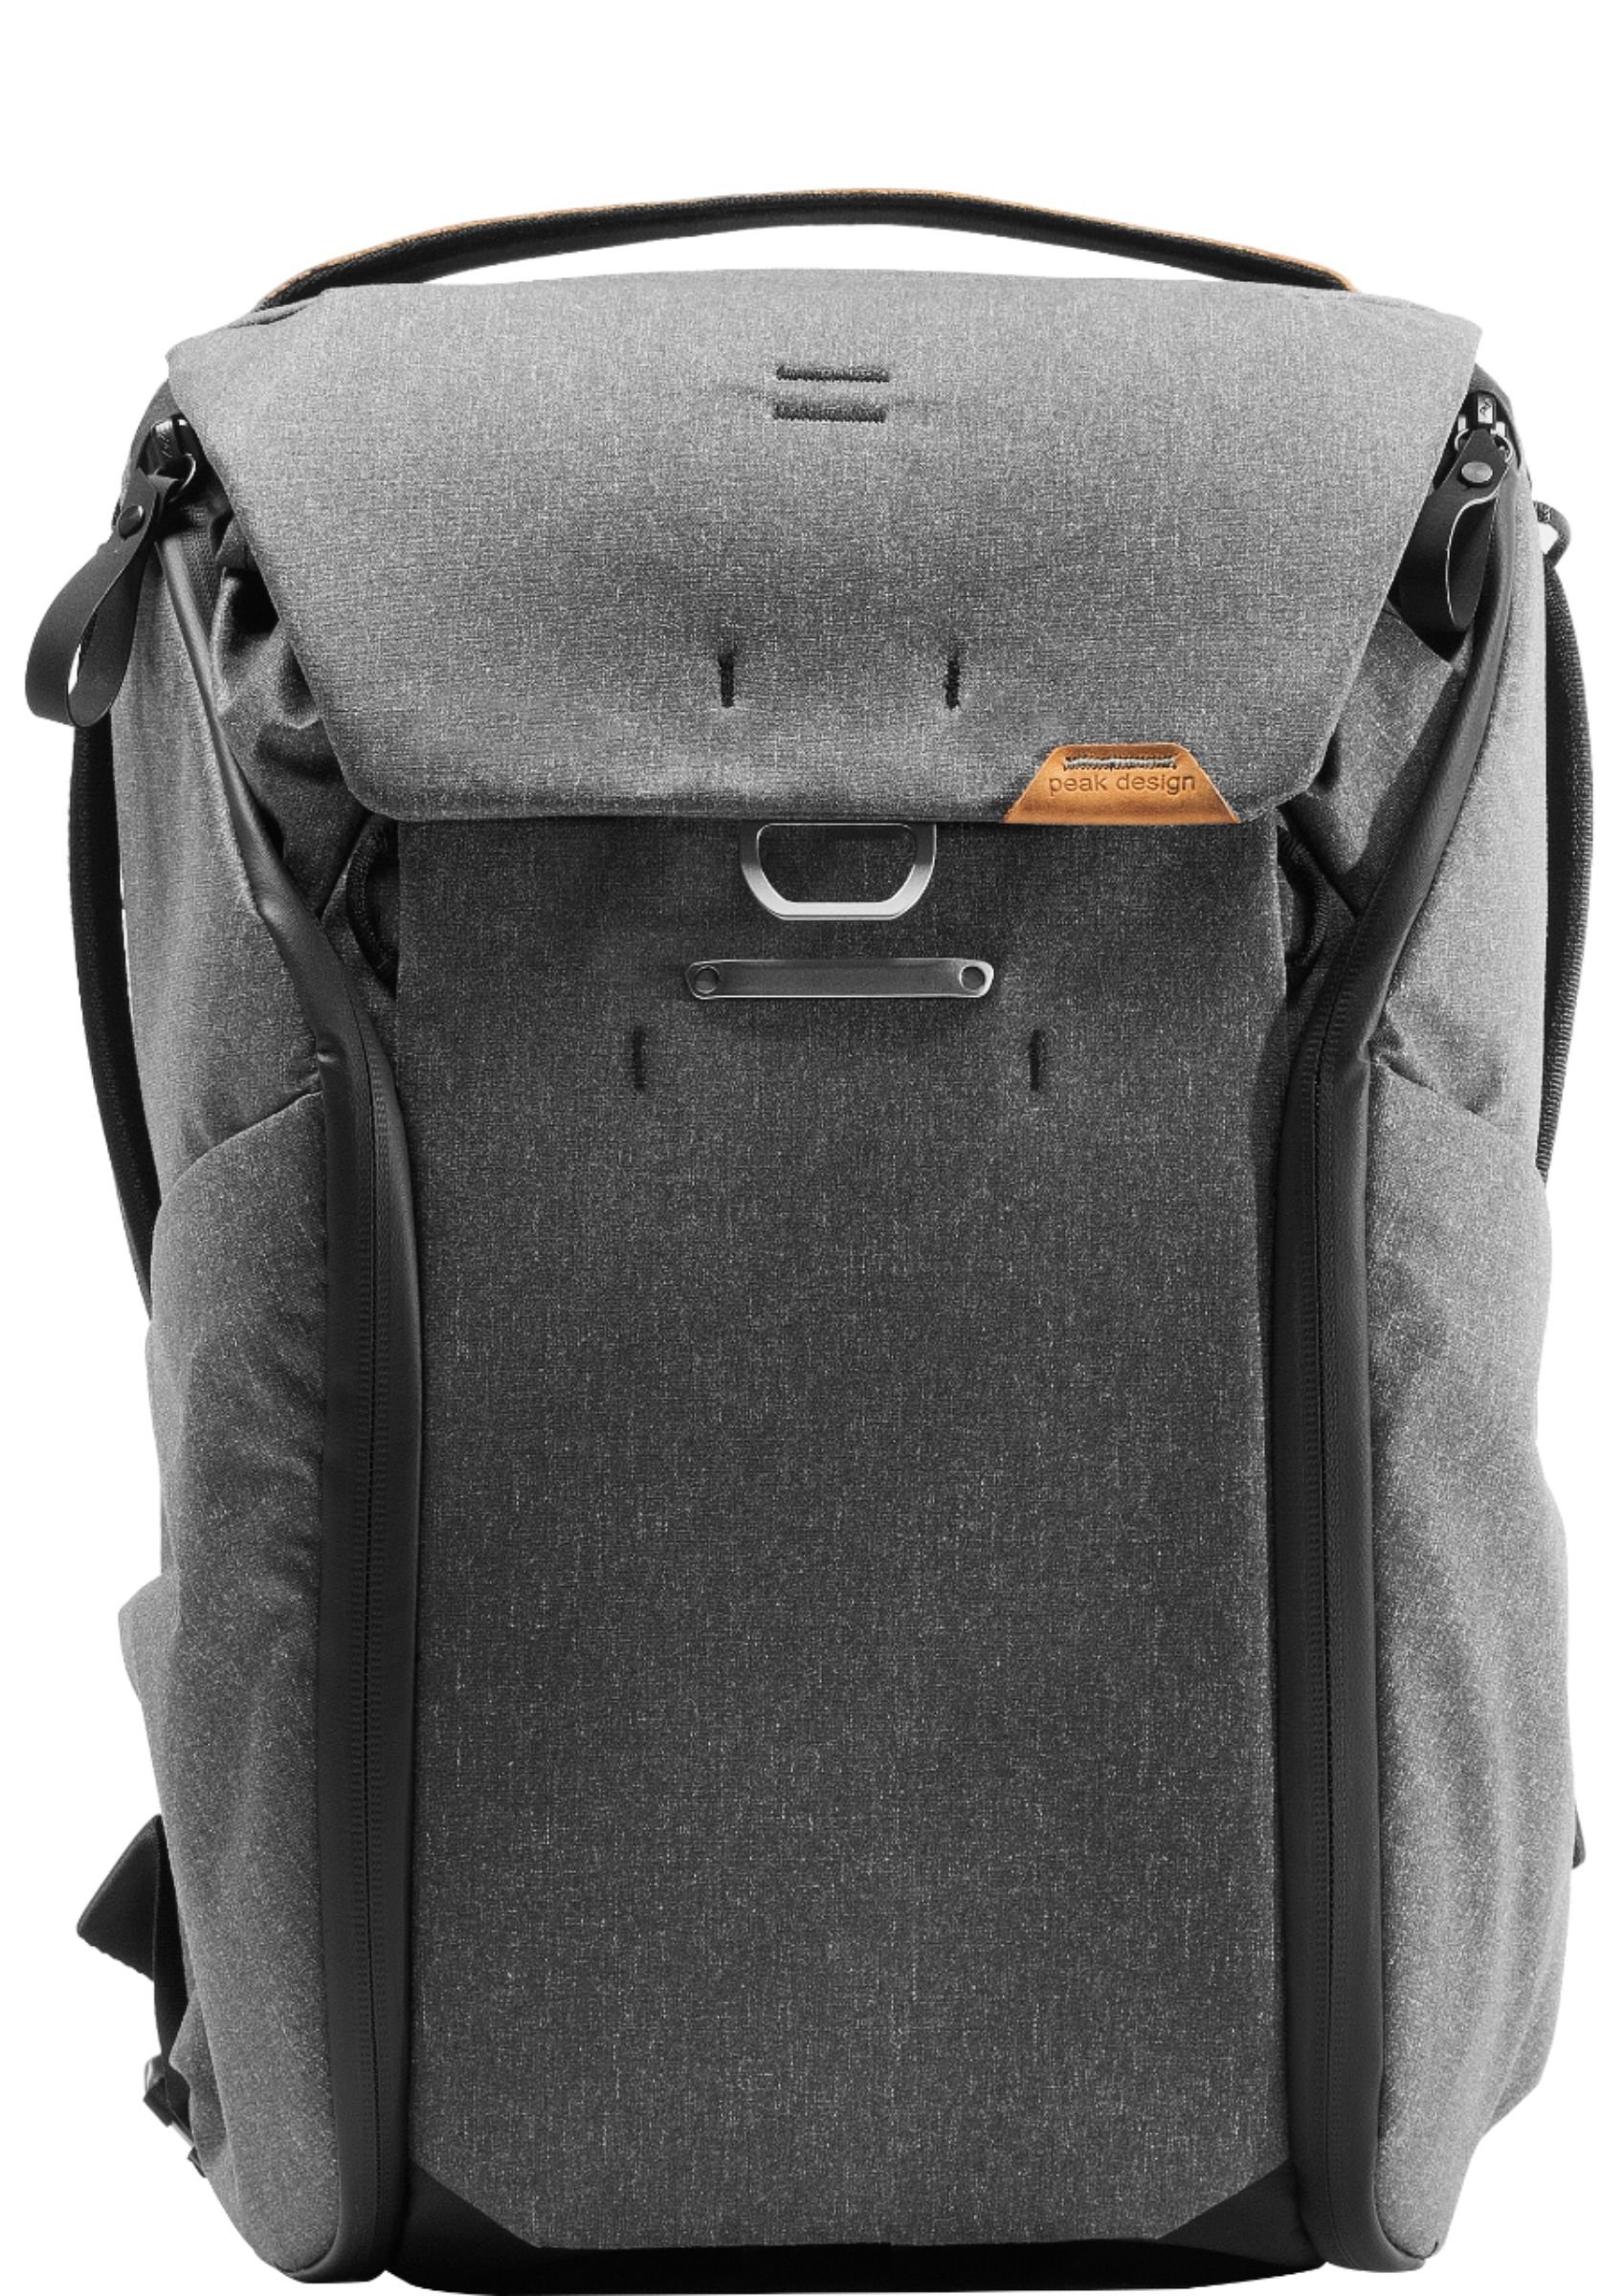 Angle View: Peak Design - Everyday Backpack V2 20L - Ash